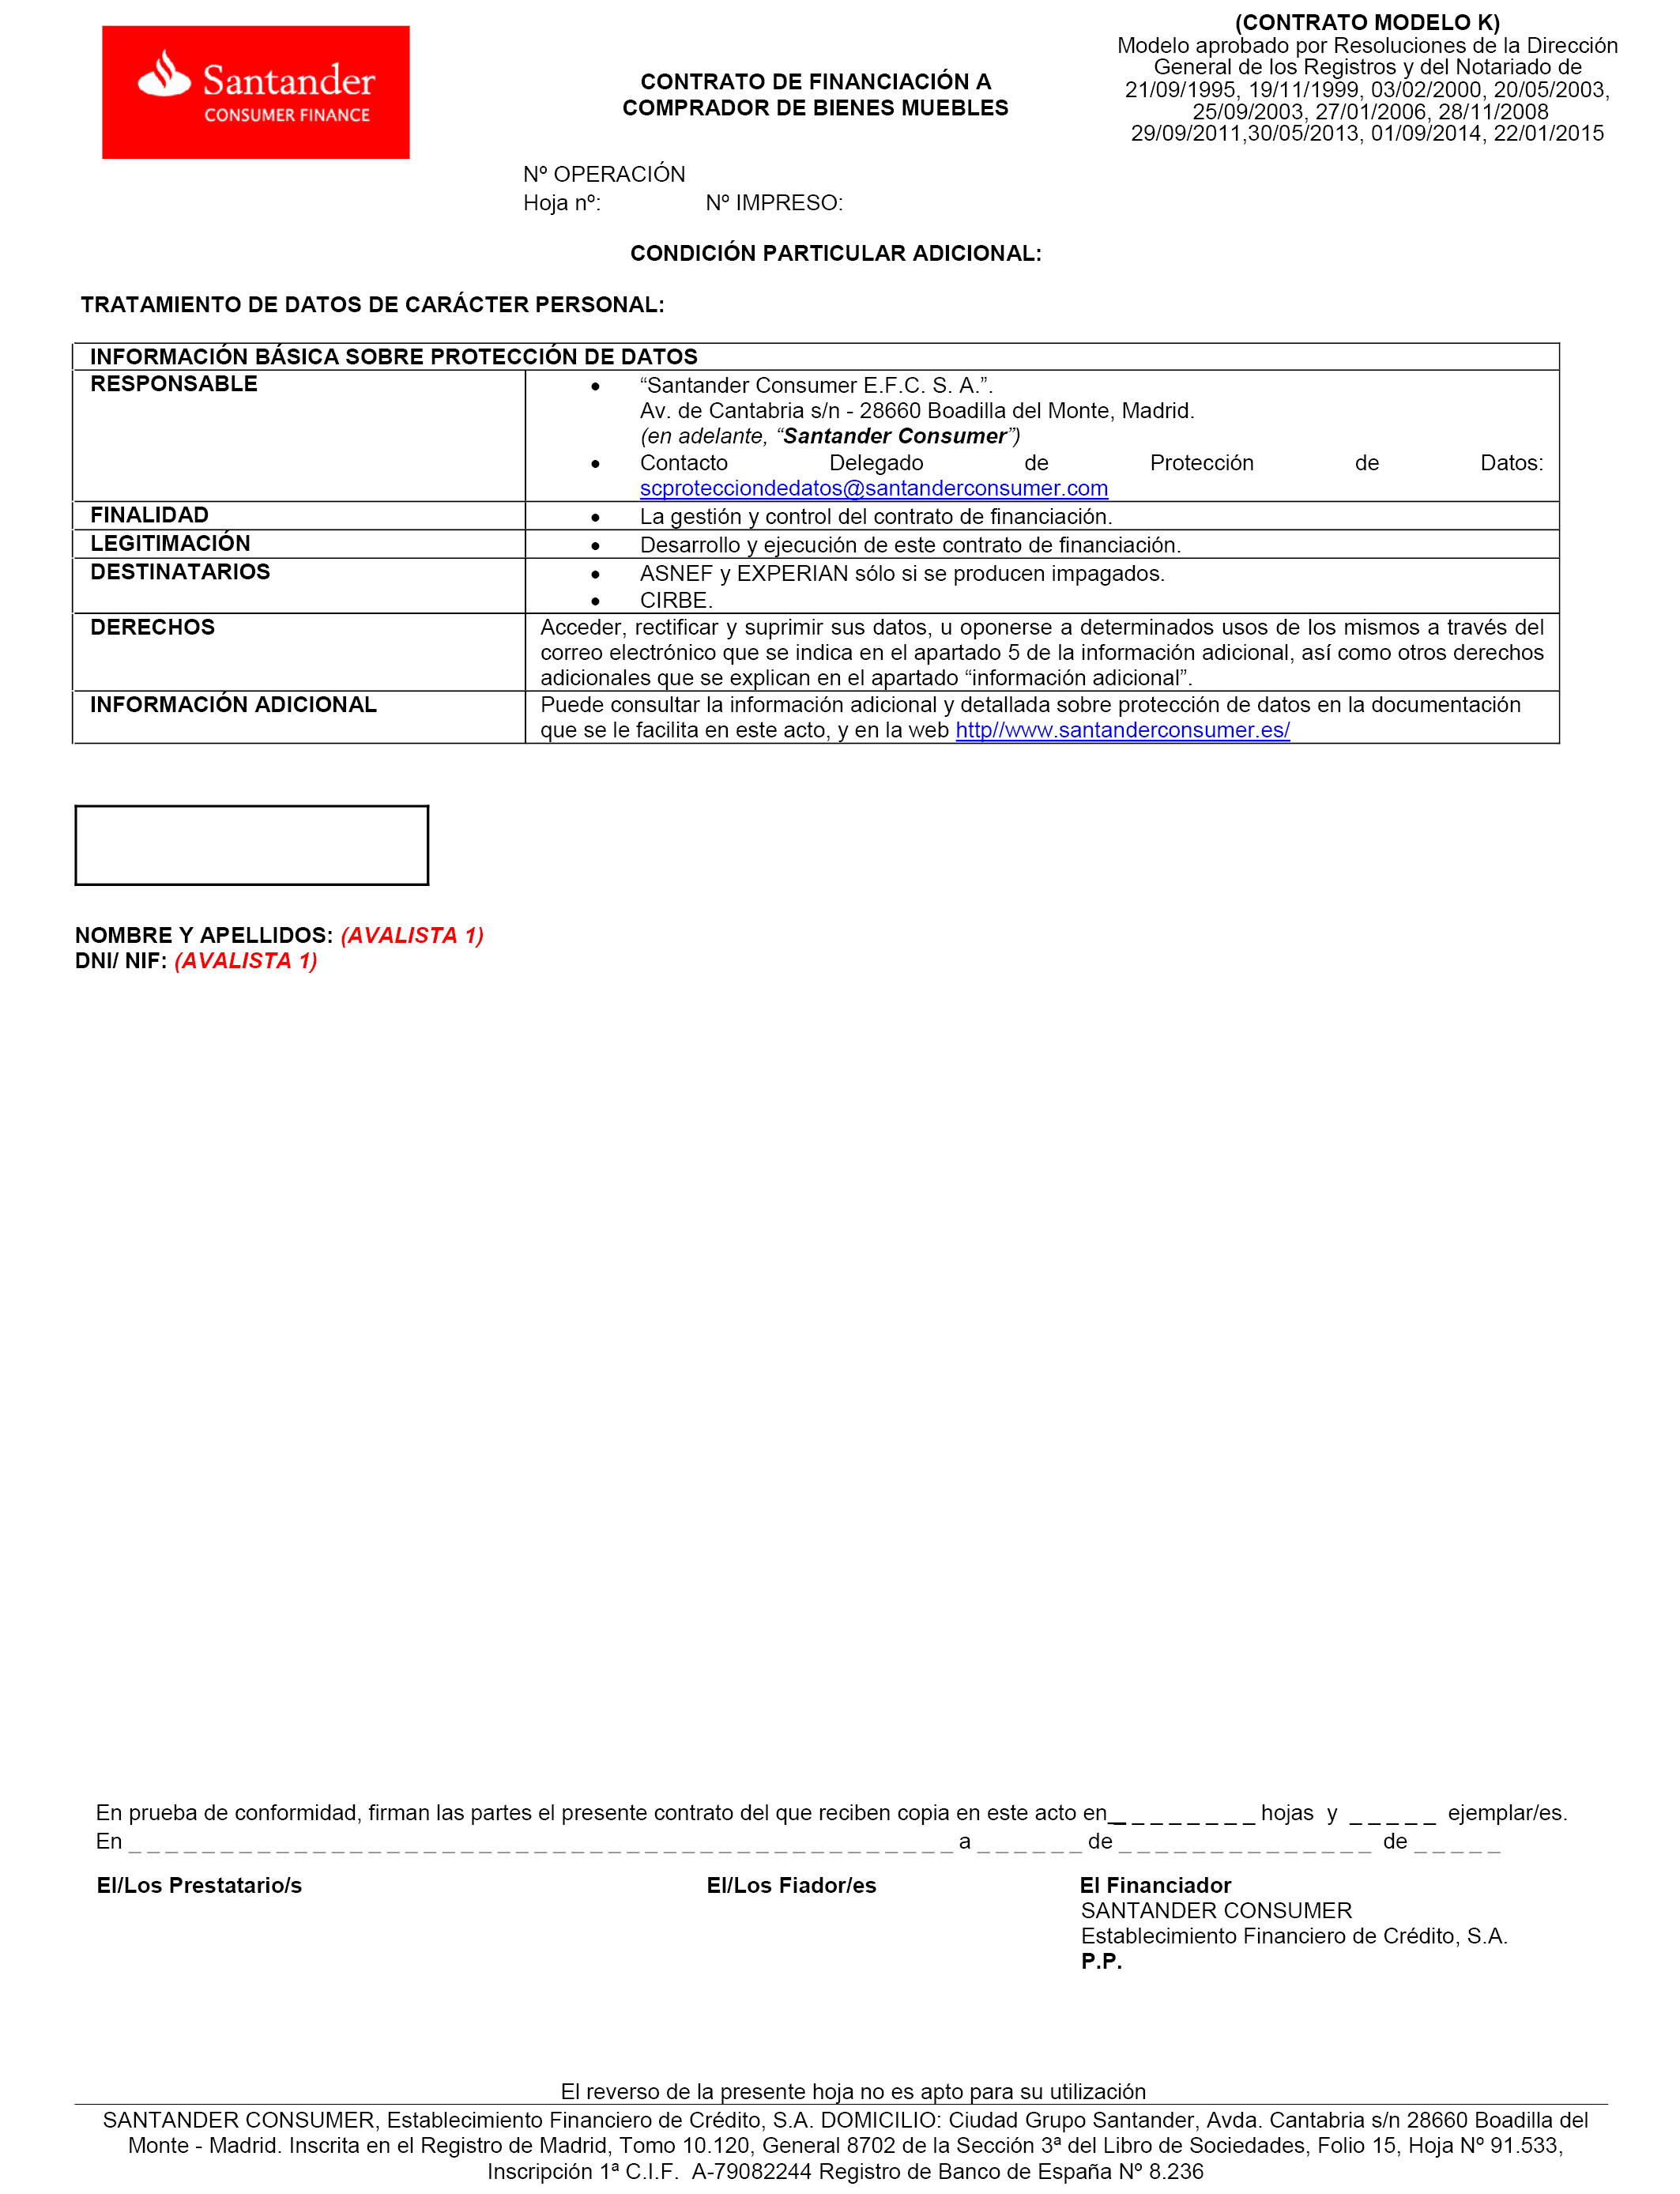 BOE.es - BOE-A-2018-15269 Resolución de 6 de septiembre de 2018, de la  Dirección General de los Registros y del Notariado, por la que se aprueban  las modificaciones introducidas en el modelo de